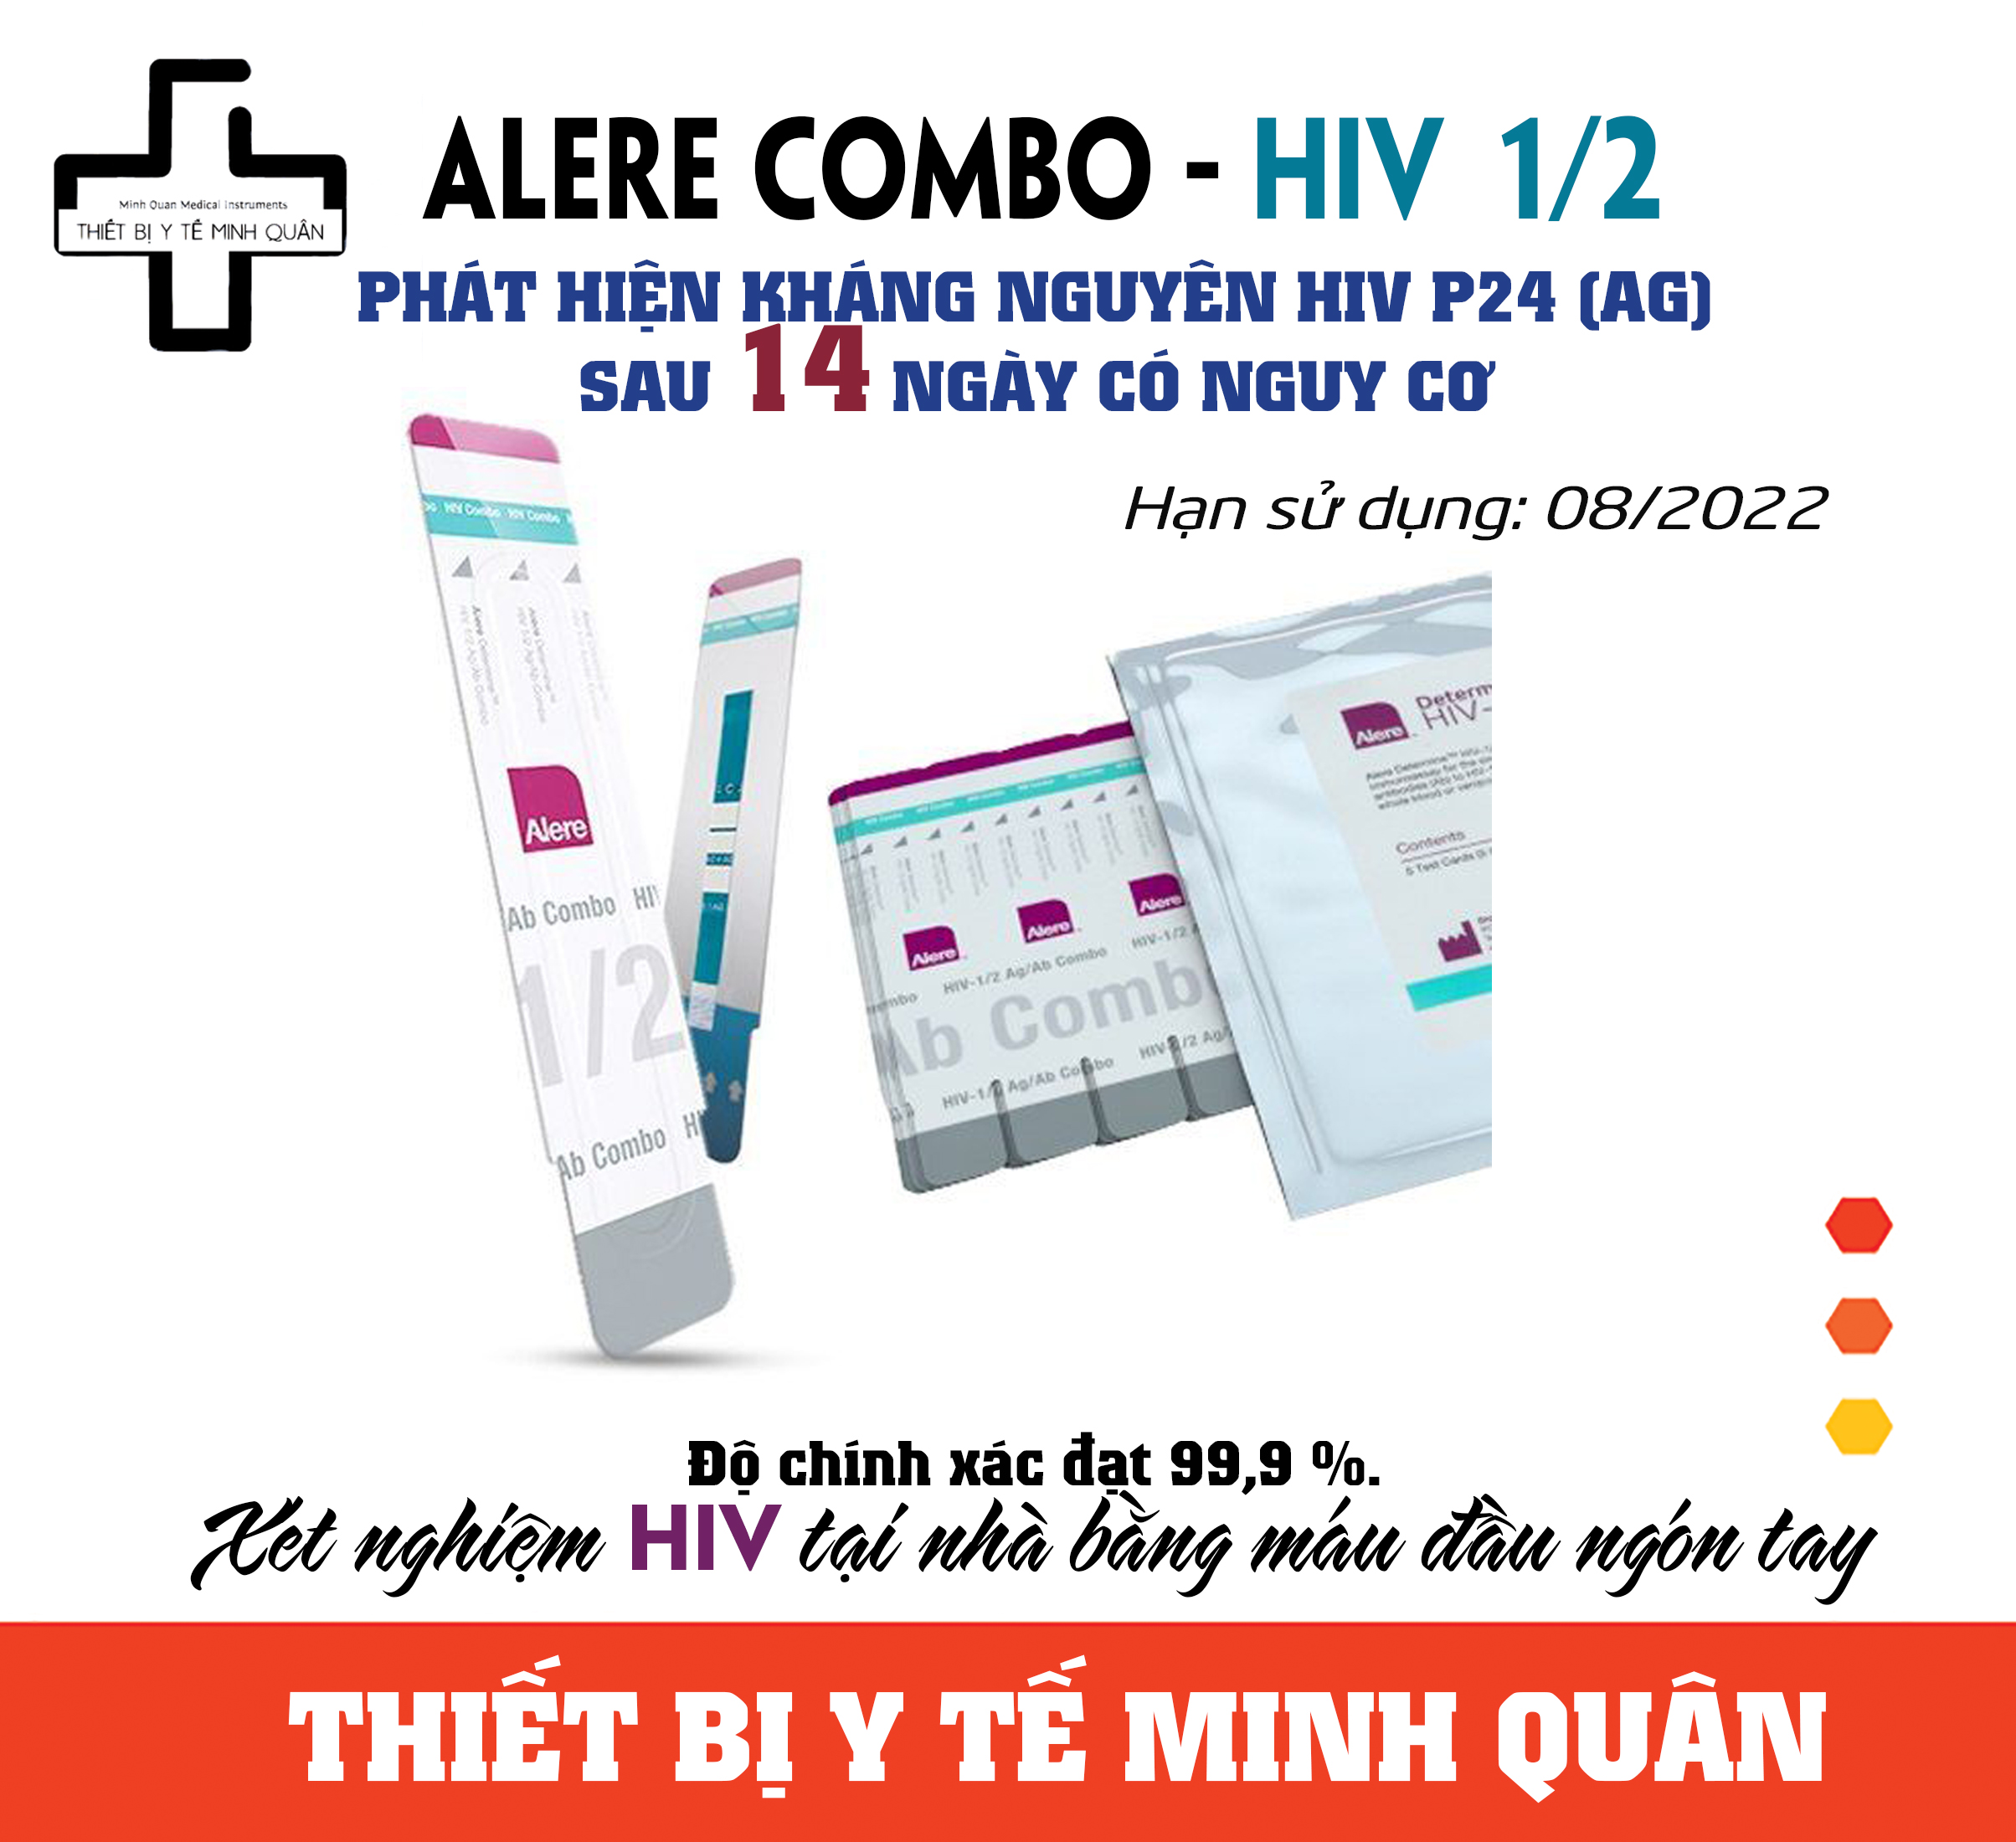 Test xét nghiệm HIV Combo Alere  phát hiện HIV sau 14 ngày có nguy cơ